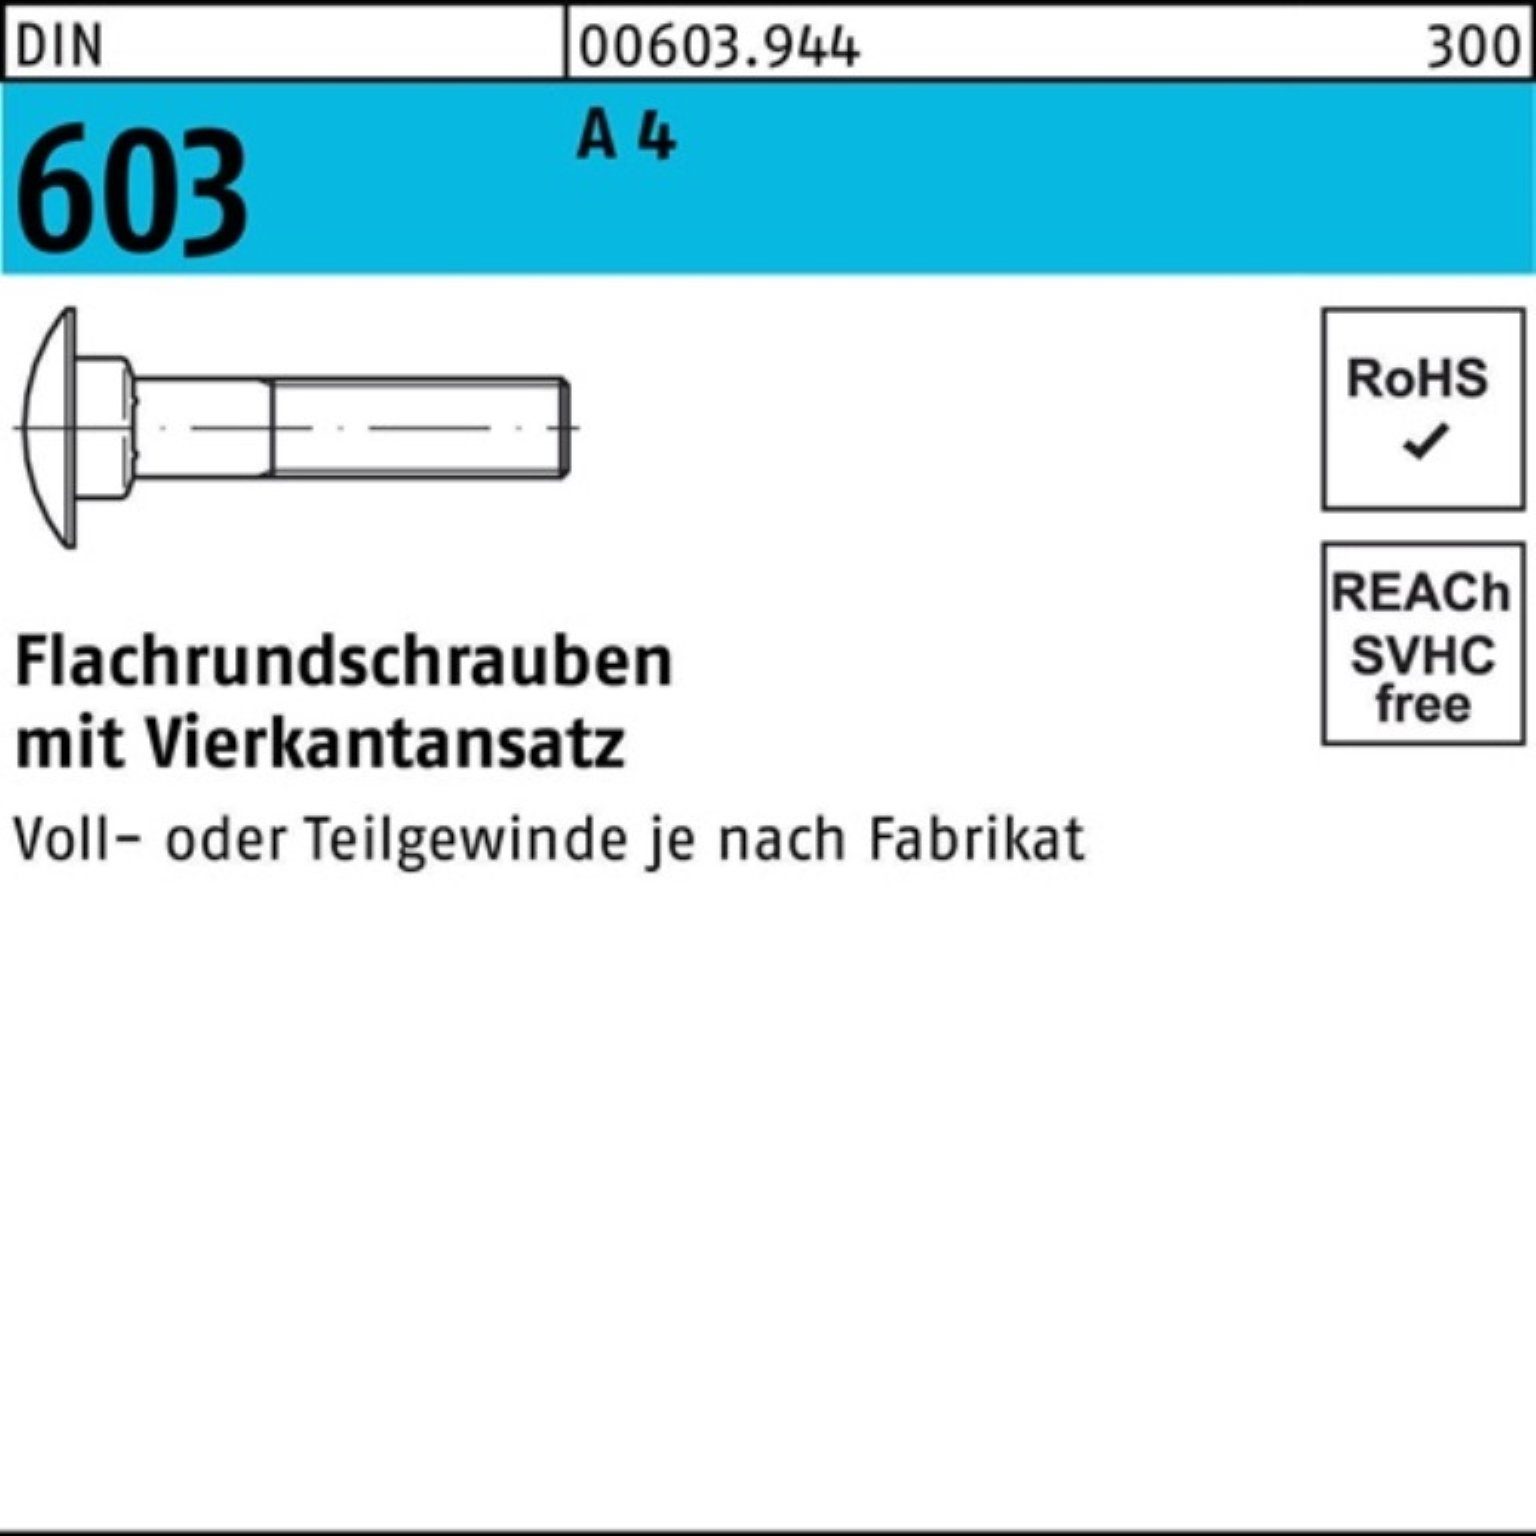 Reyher Schraube 100er Pack Flachrundschraube DIN 603 Vierkantansatz M16x 50 A 4 1 Stü